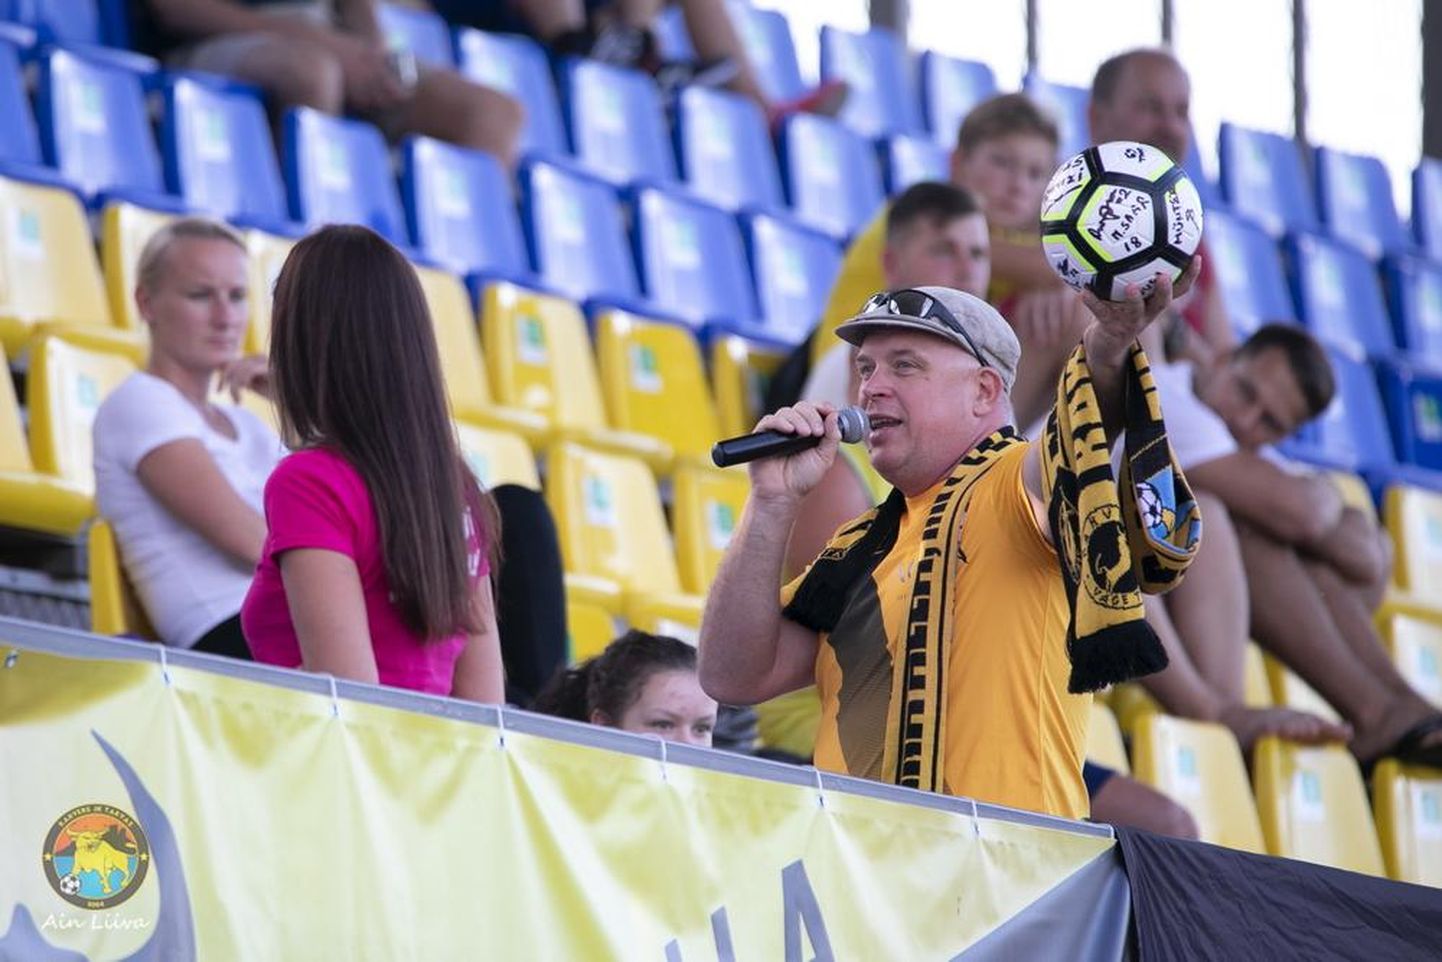 Heategevuslikul oksjonil eilse jalgpallimängu vaheajal viibutas haamrit Rakvere teatri näitleja Tarvo Sõmer.